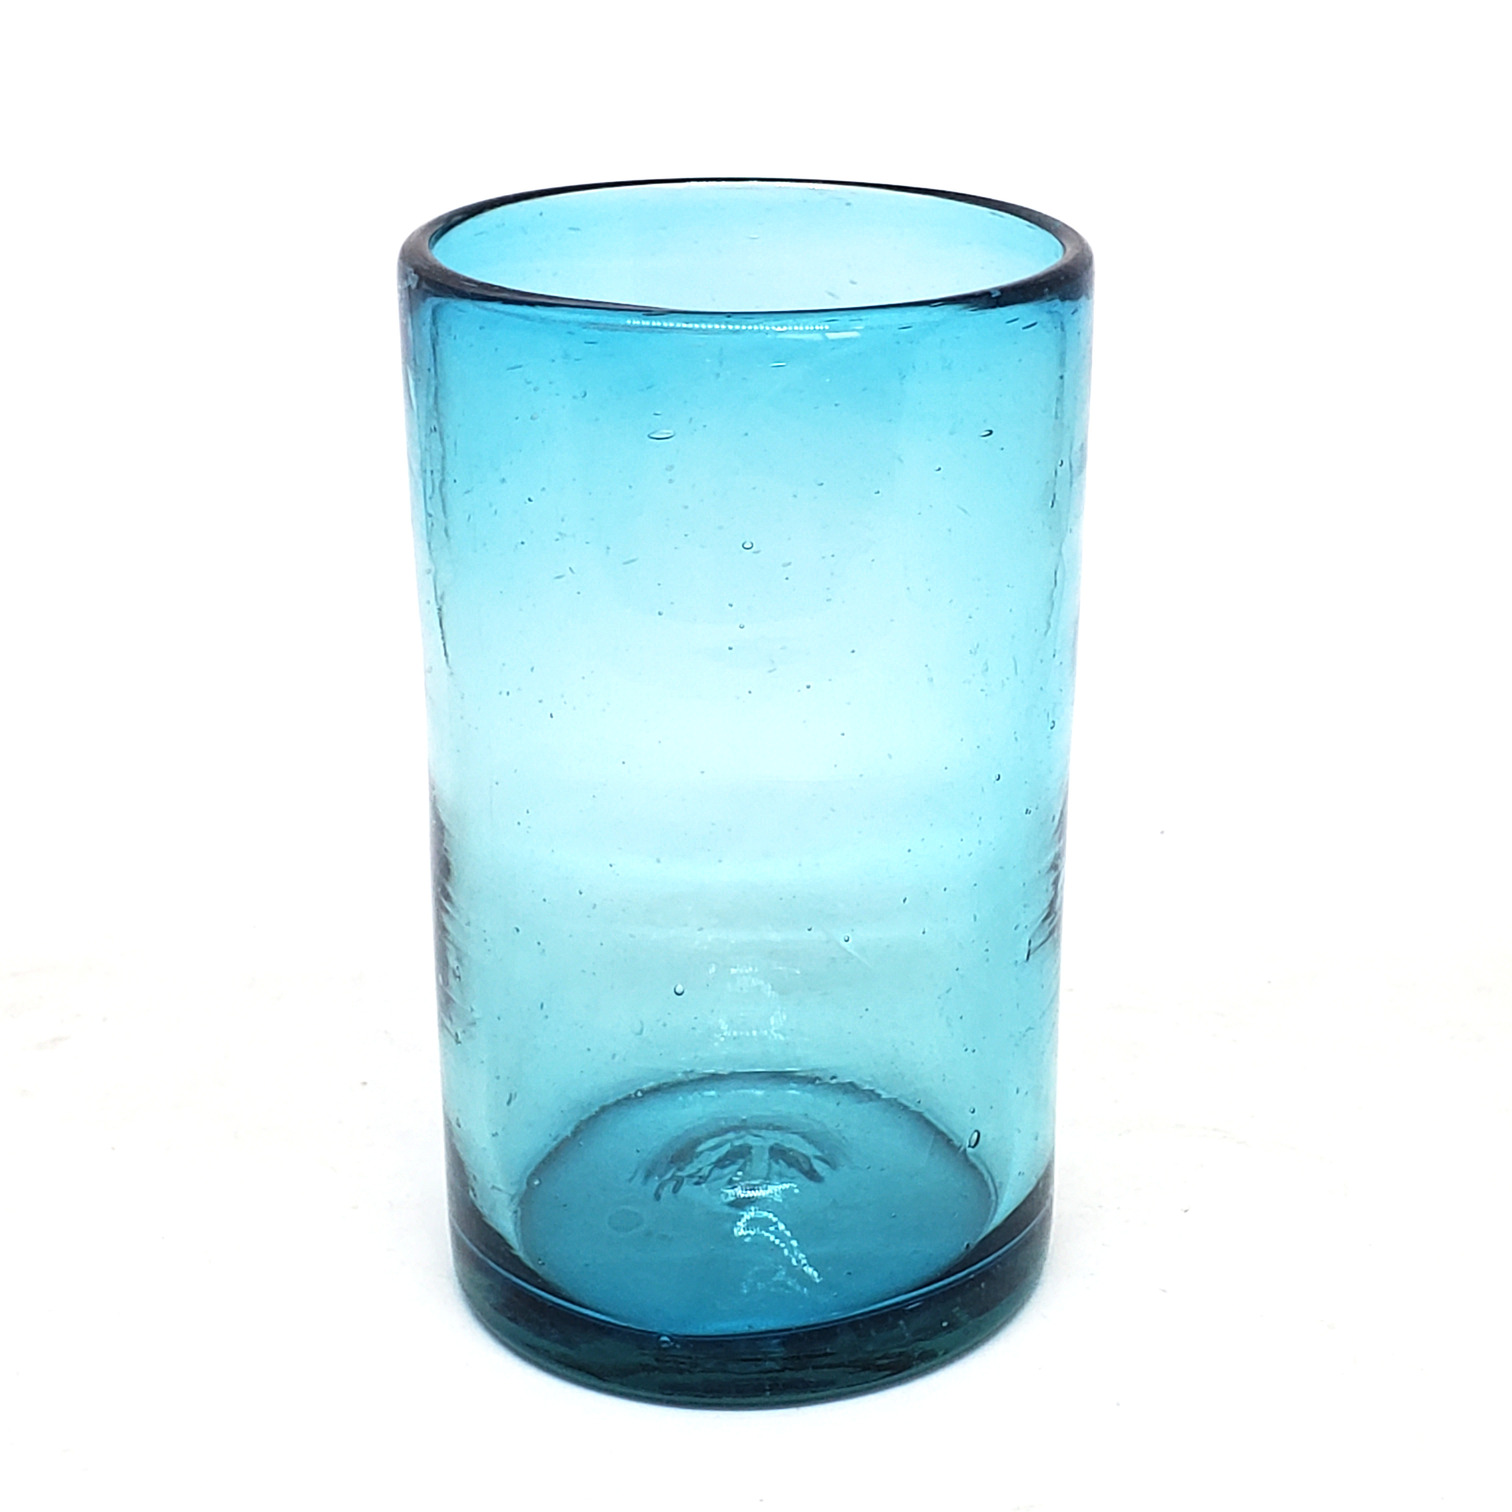 VIDRIO SOPLADO / Juego de 6 vasos grandes color azul aqua, 14 oz, Vidrio Reciclado, Libre de Plomo y Toxinas